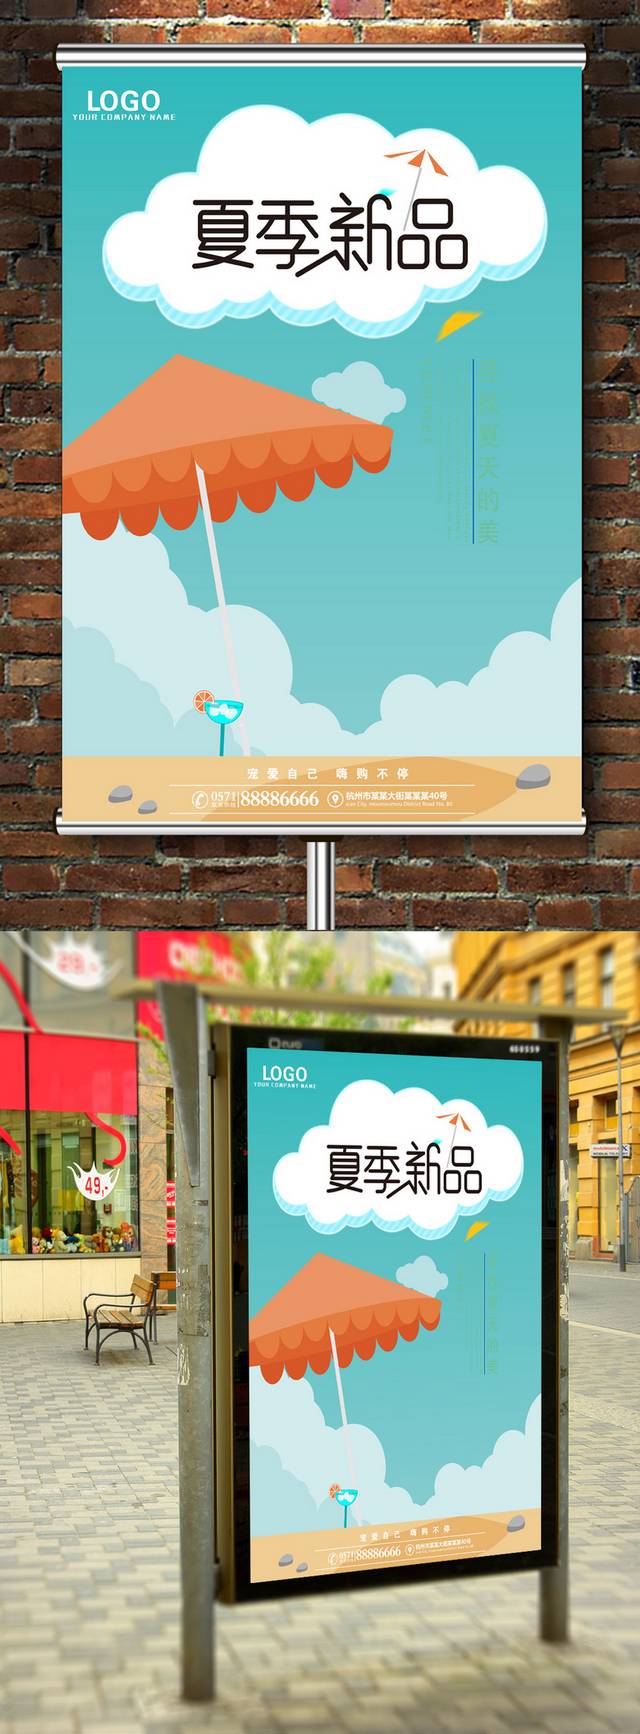 清新夏日新品上市宣传海报